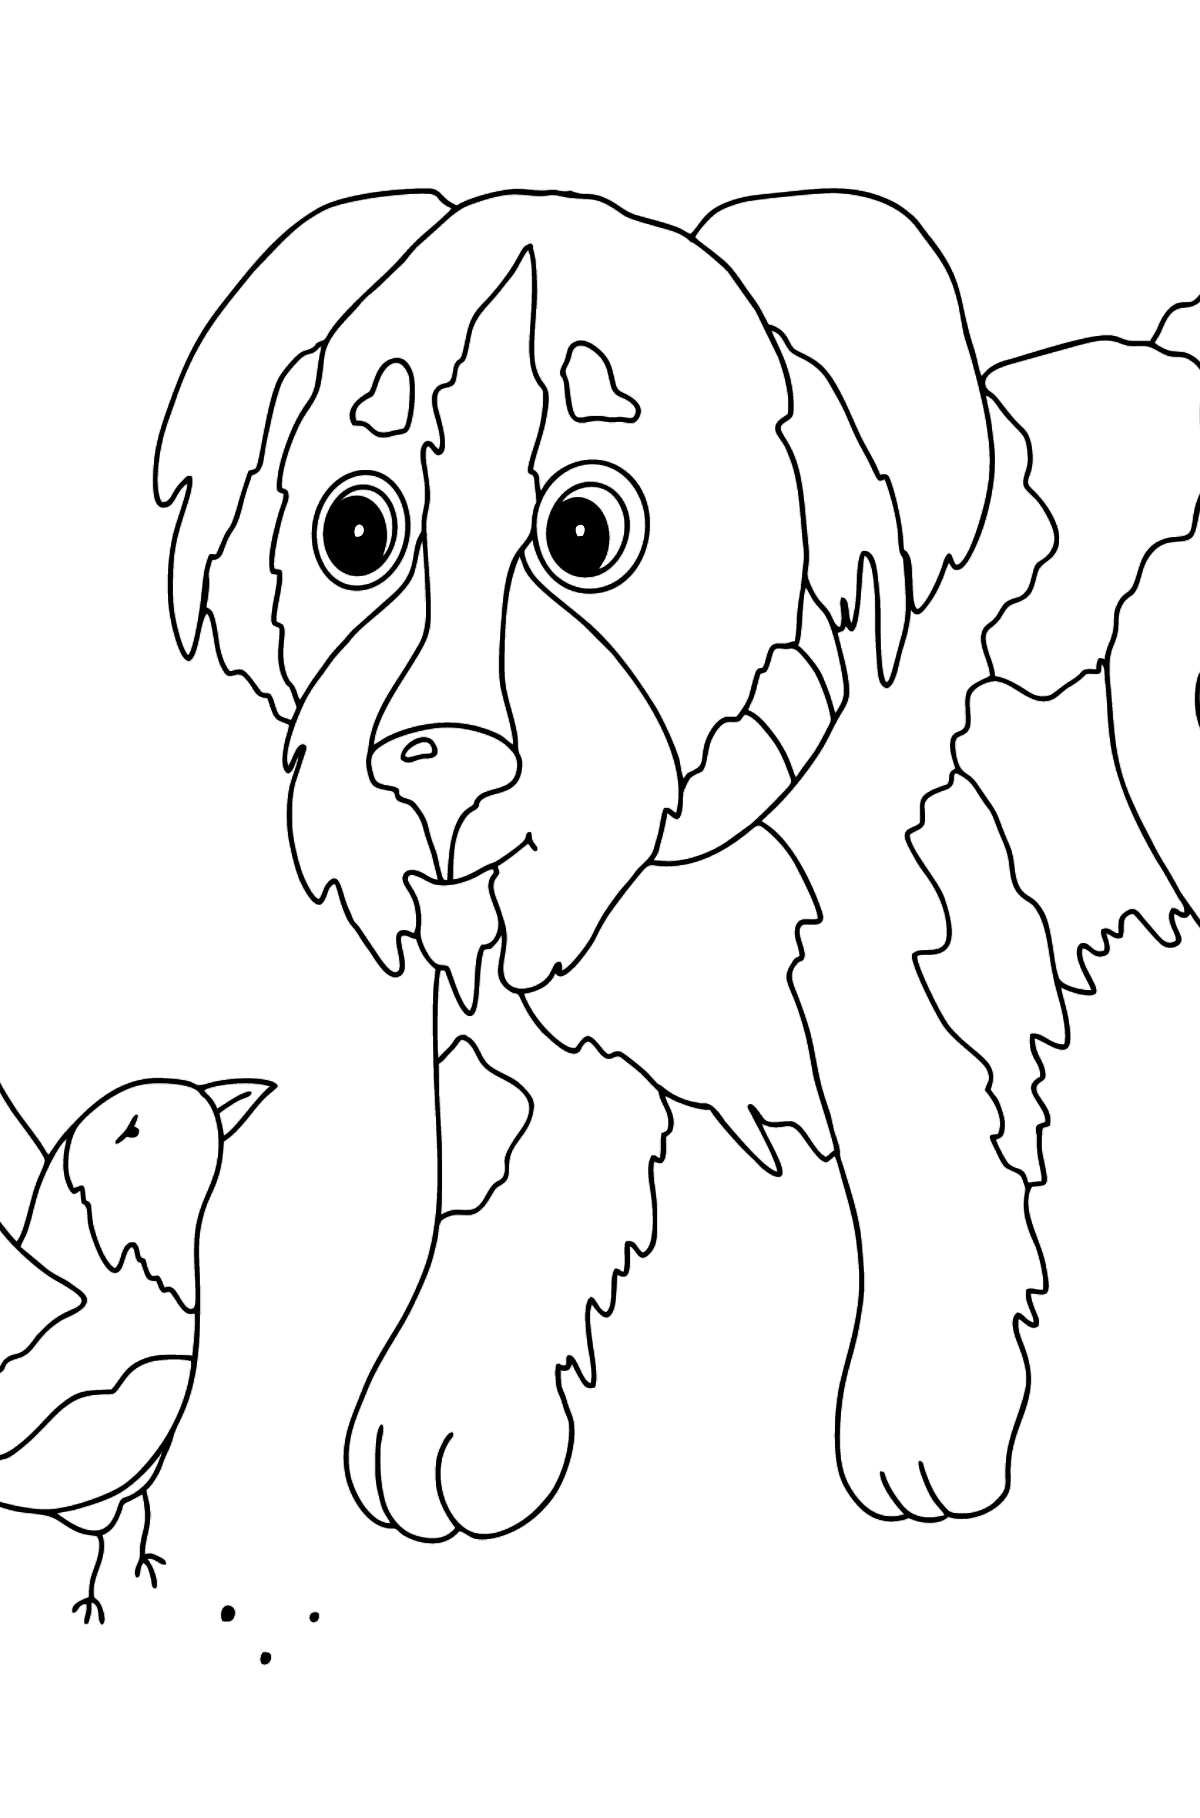 Desenho de cachorrinho adorável para colorir (fácil) - Imagens para Colorir para Crianças